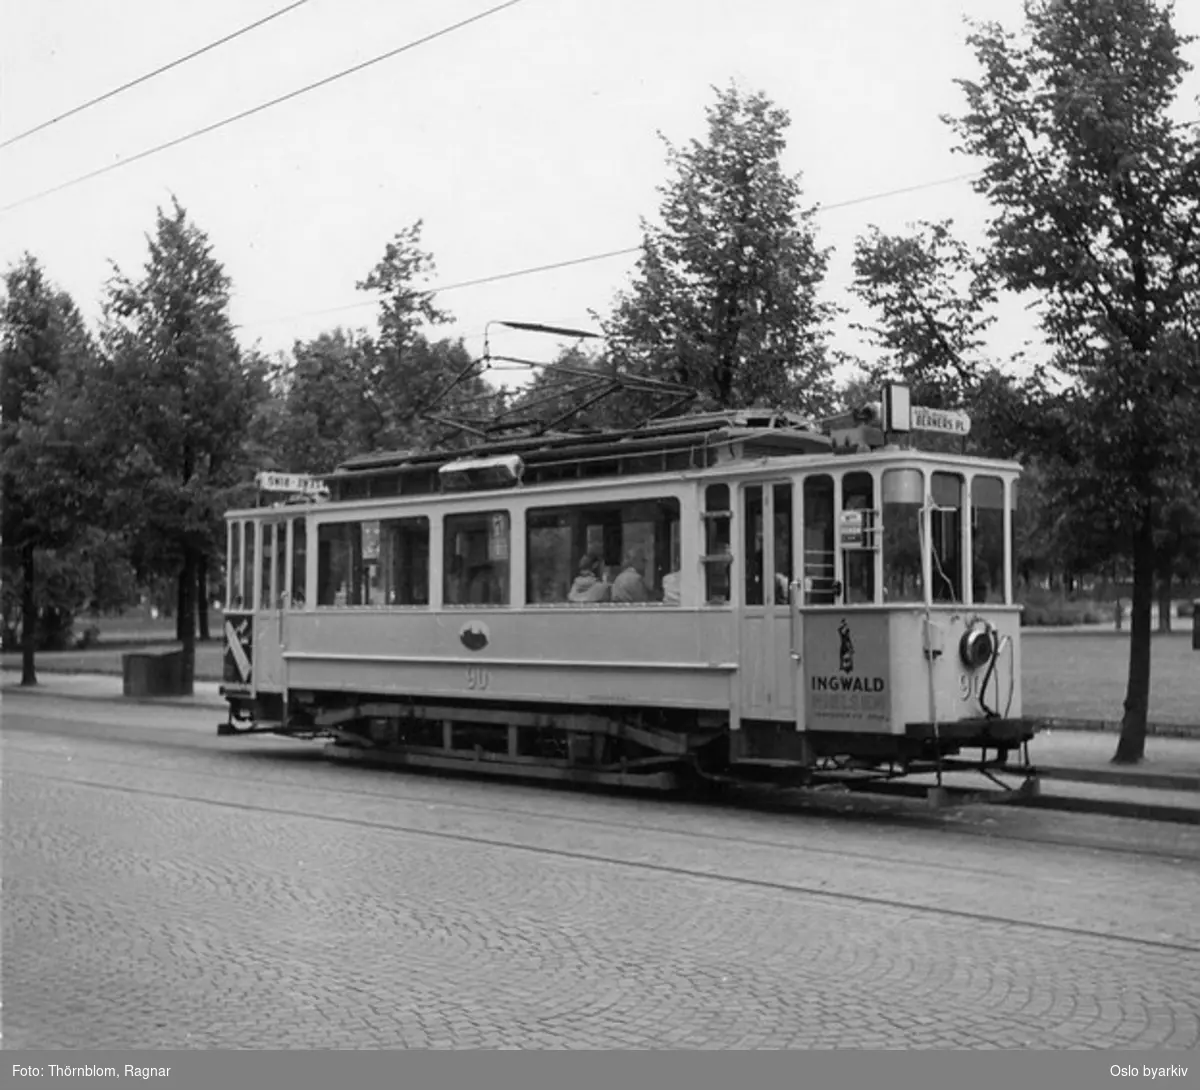 Oslo Sporveier. Trikk motorvogn 90 type SS lang linje 13, Sagene-Rodeløkka over St. Hanshaugen og Stortorvet (1955-1961). Her i Kierschows gate.